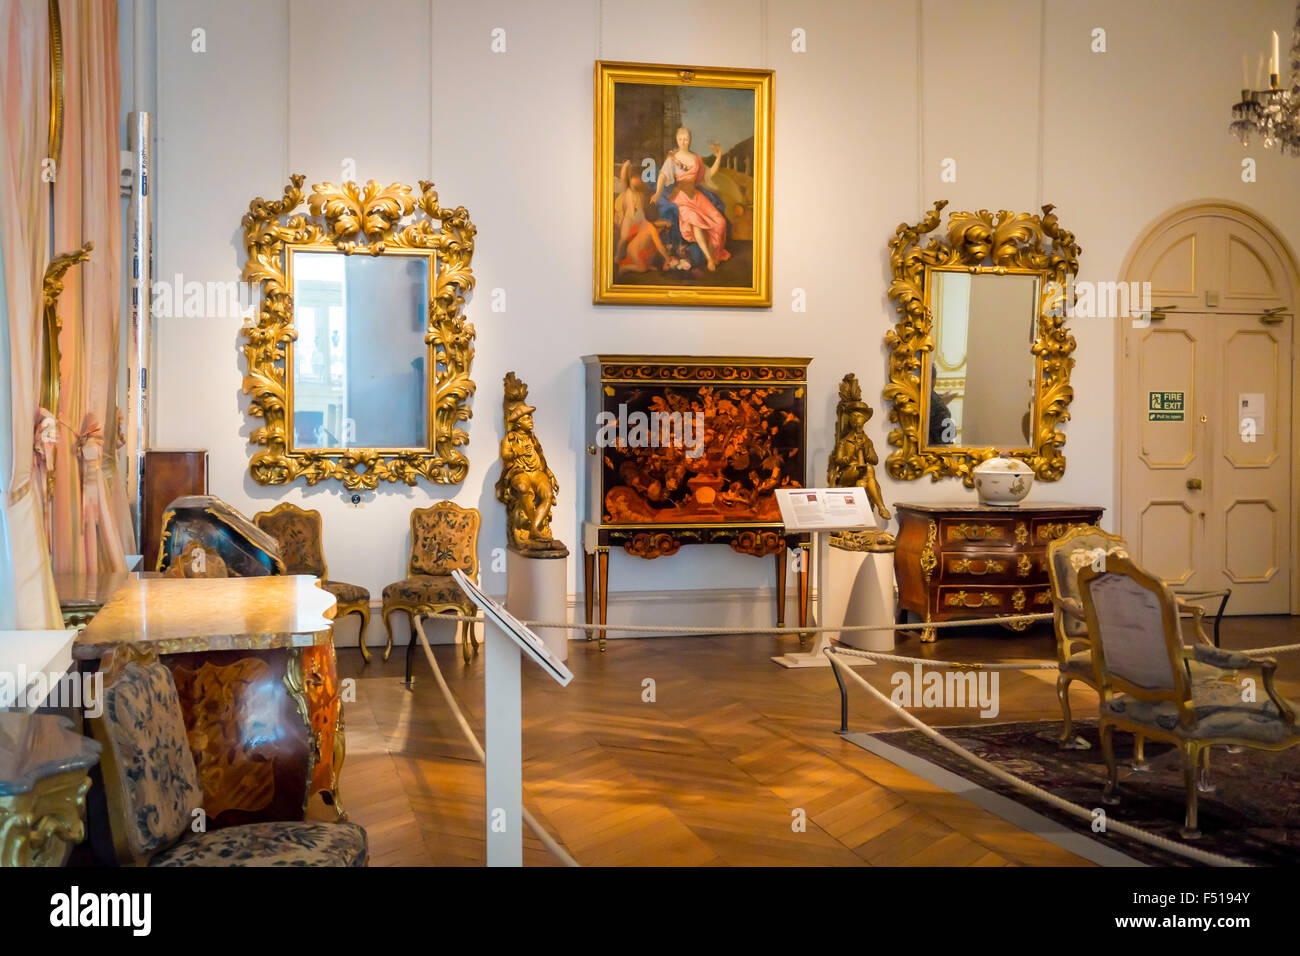 "Europäischen dekorativen Kunst pro Display zeigt das Beste aus dem 18. Jahrhundert Handwerkskunst auf Bowes Museum Barnard Castle Stockfoto